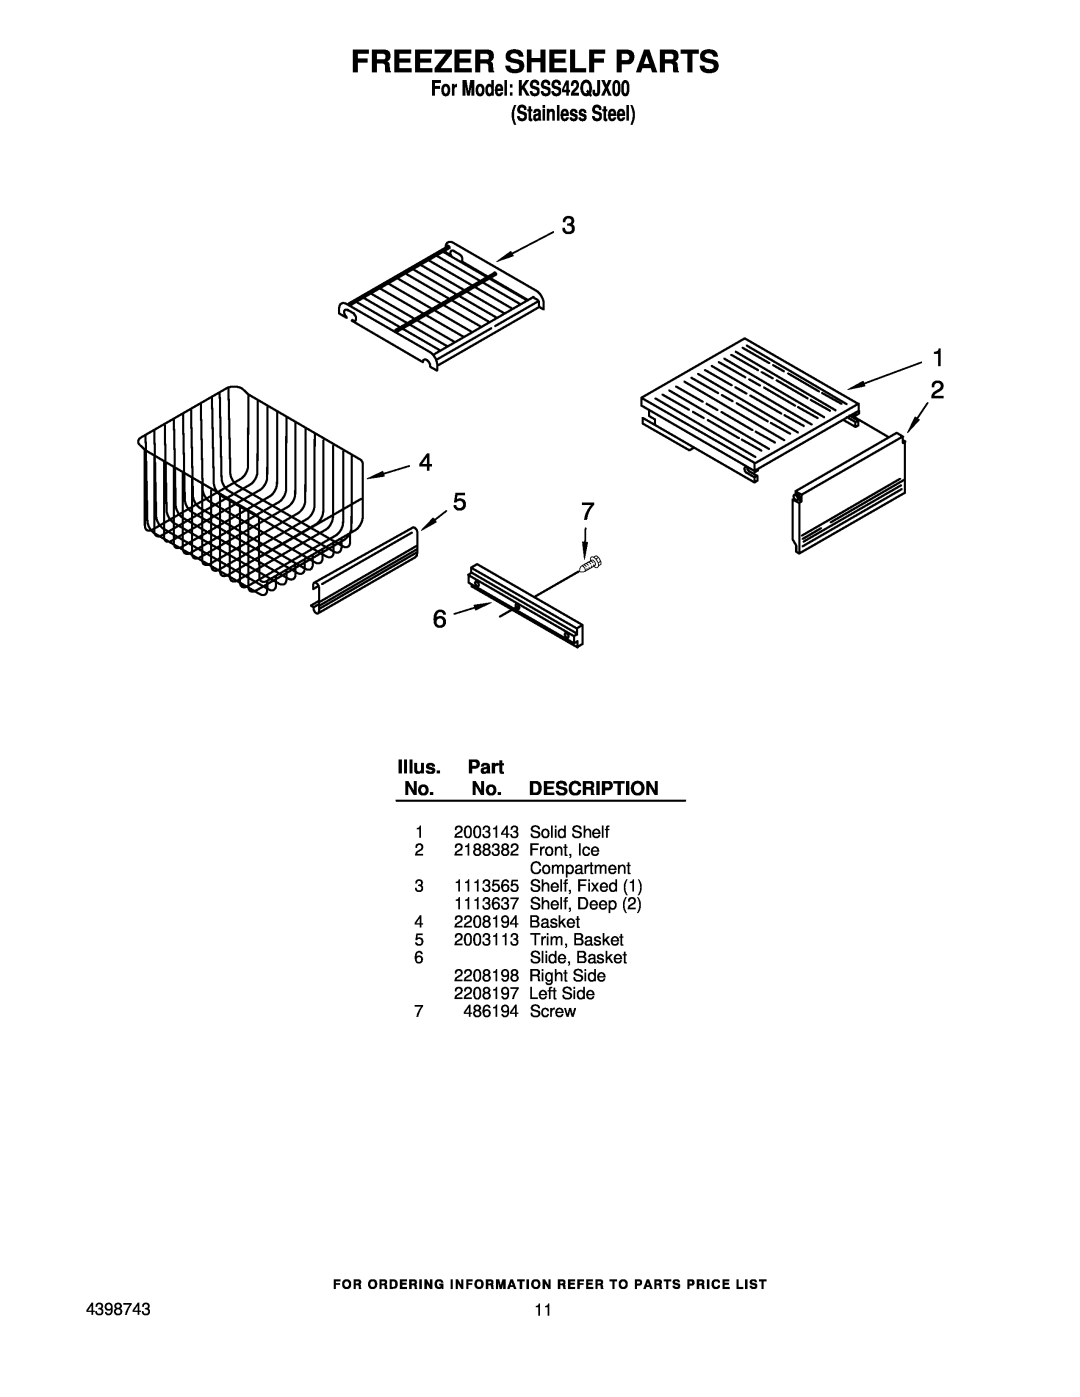 KitchenAid manual Freezer Shelf Parts, For Model KSSS42QJX00 Stainless Steel, Illus. Part No. No. DESCRIPTION 